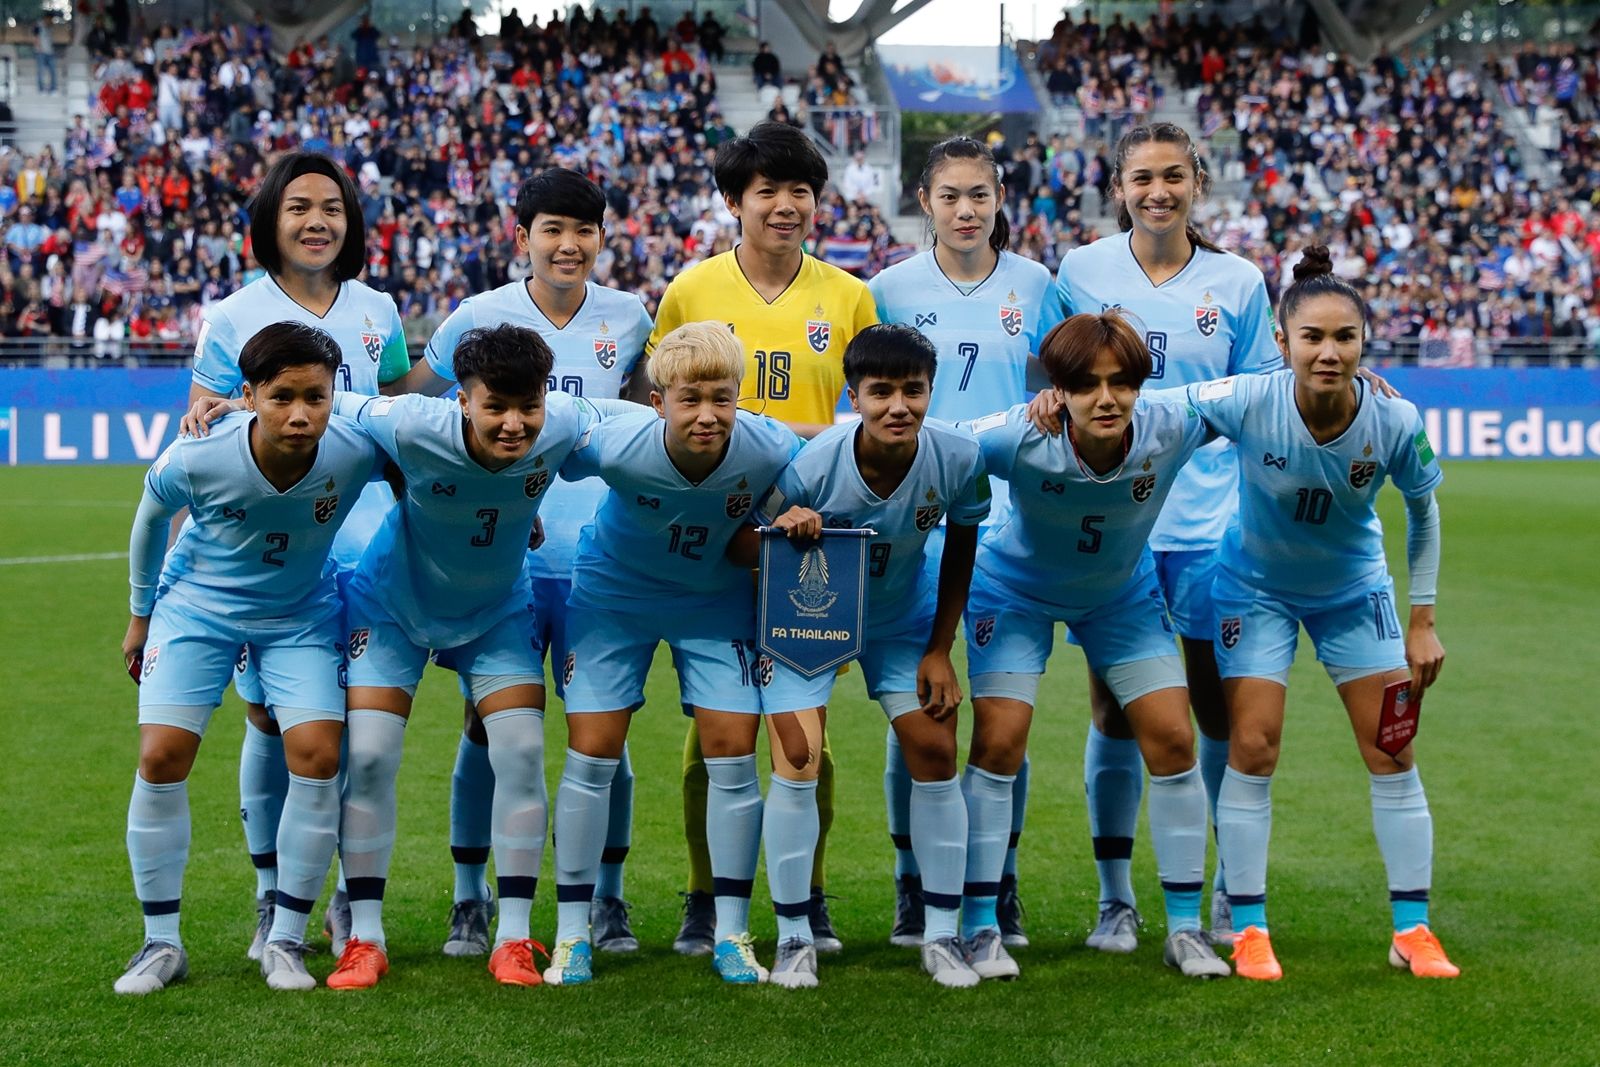 AFP-ฟุตบอลหญิงทีมชาติไทย ชบาแก้ว ในการแข่งขันเวิลด์คัพ2019ที่ฝรั่งเศส-FIFA บอลโลกหญิง.jpg